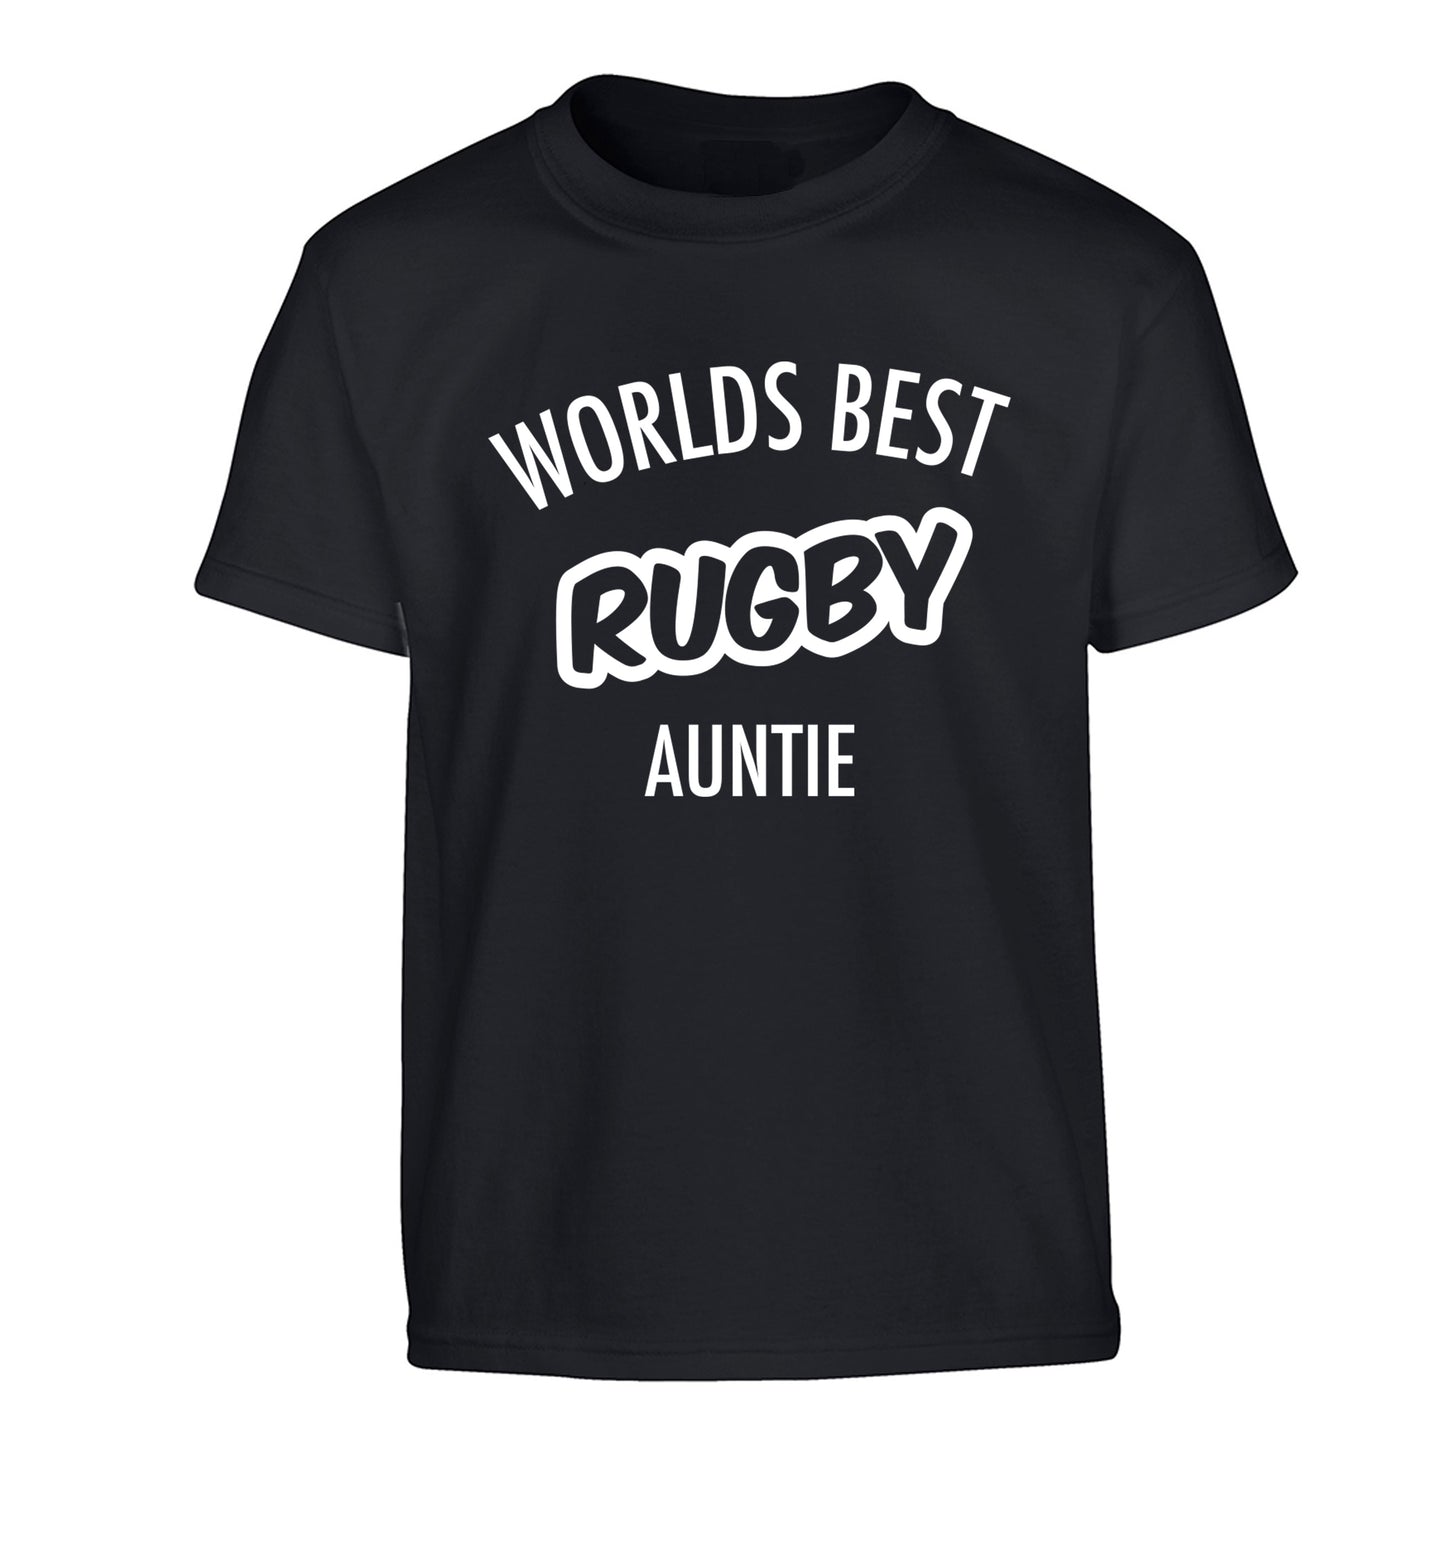 Worlds best rugby auntie Children's black Tshirt 12-13 Years